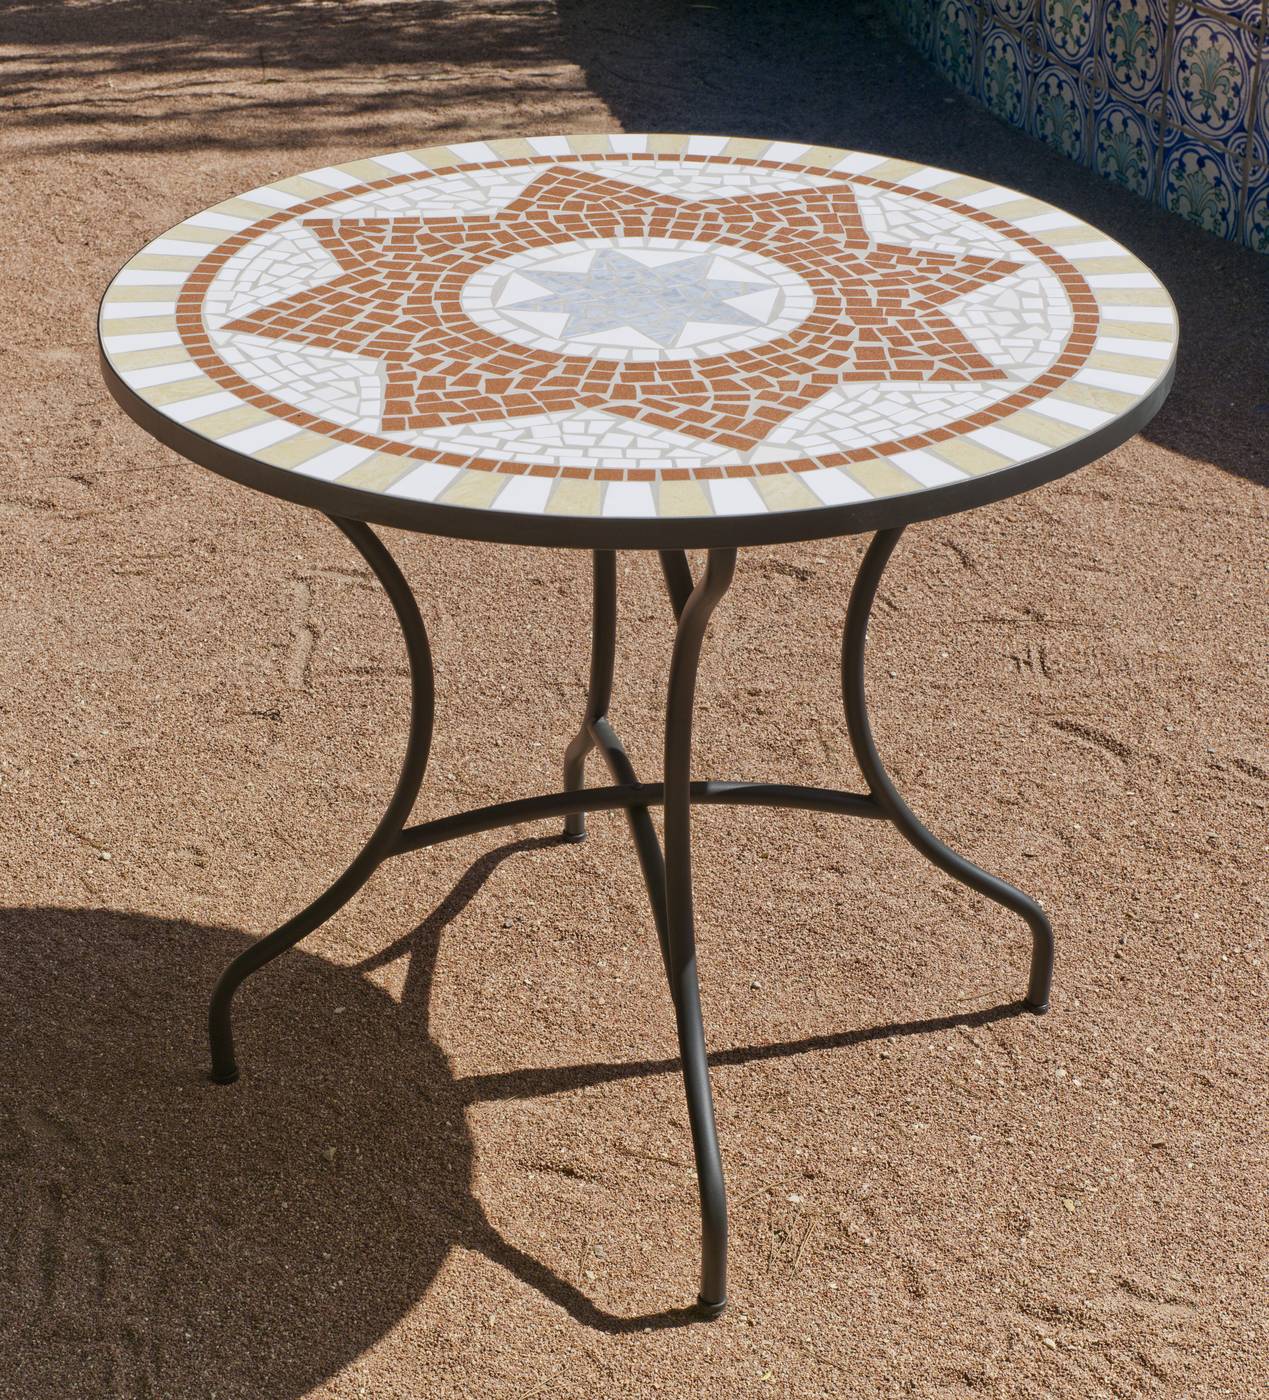 Conjunto Mosaico Aney-Bergamo 100-4 - Conjunto de acero forjado color bronce: 1 mesa de forja con panel mosaico + 4 sillones de ratán sintético + 4 cojines